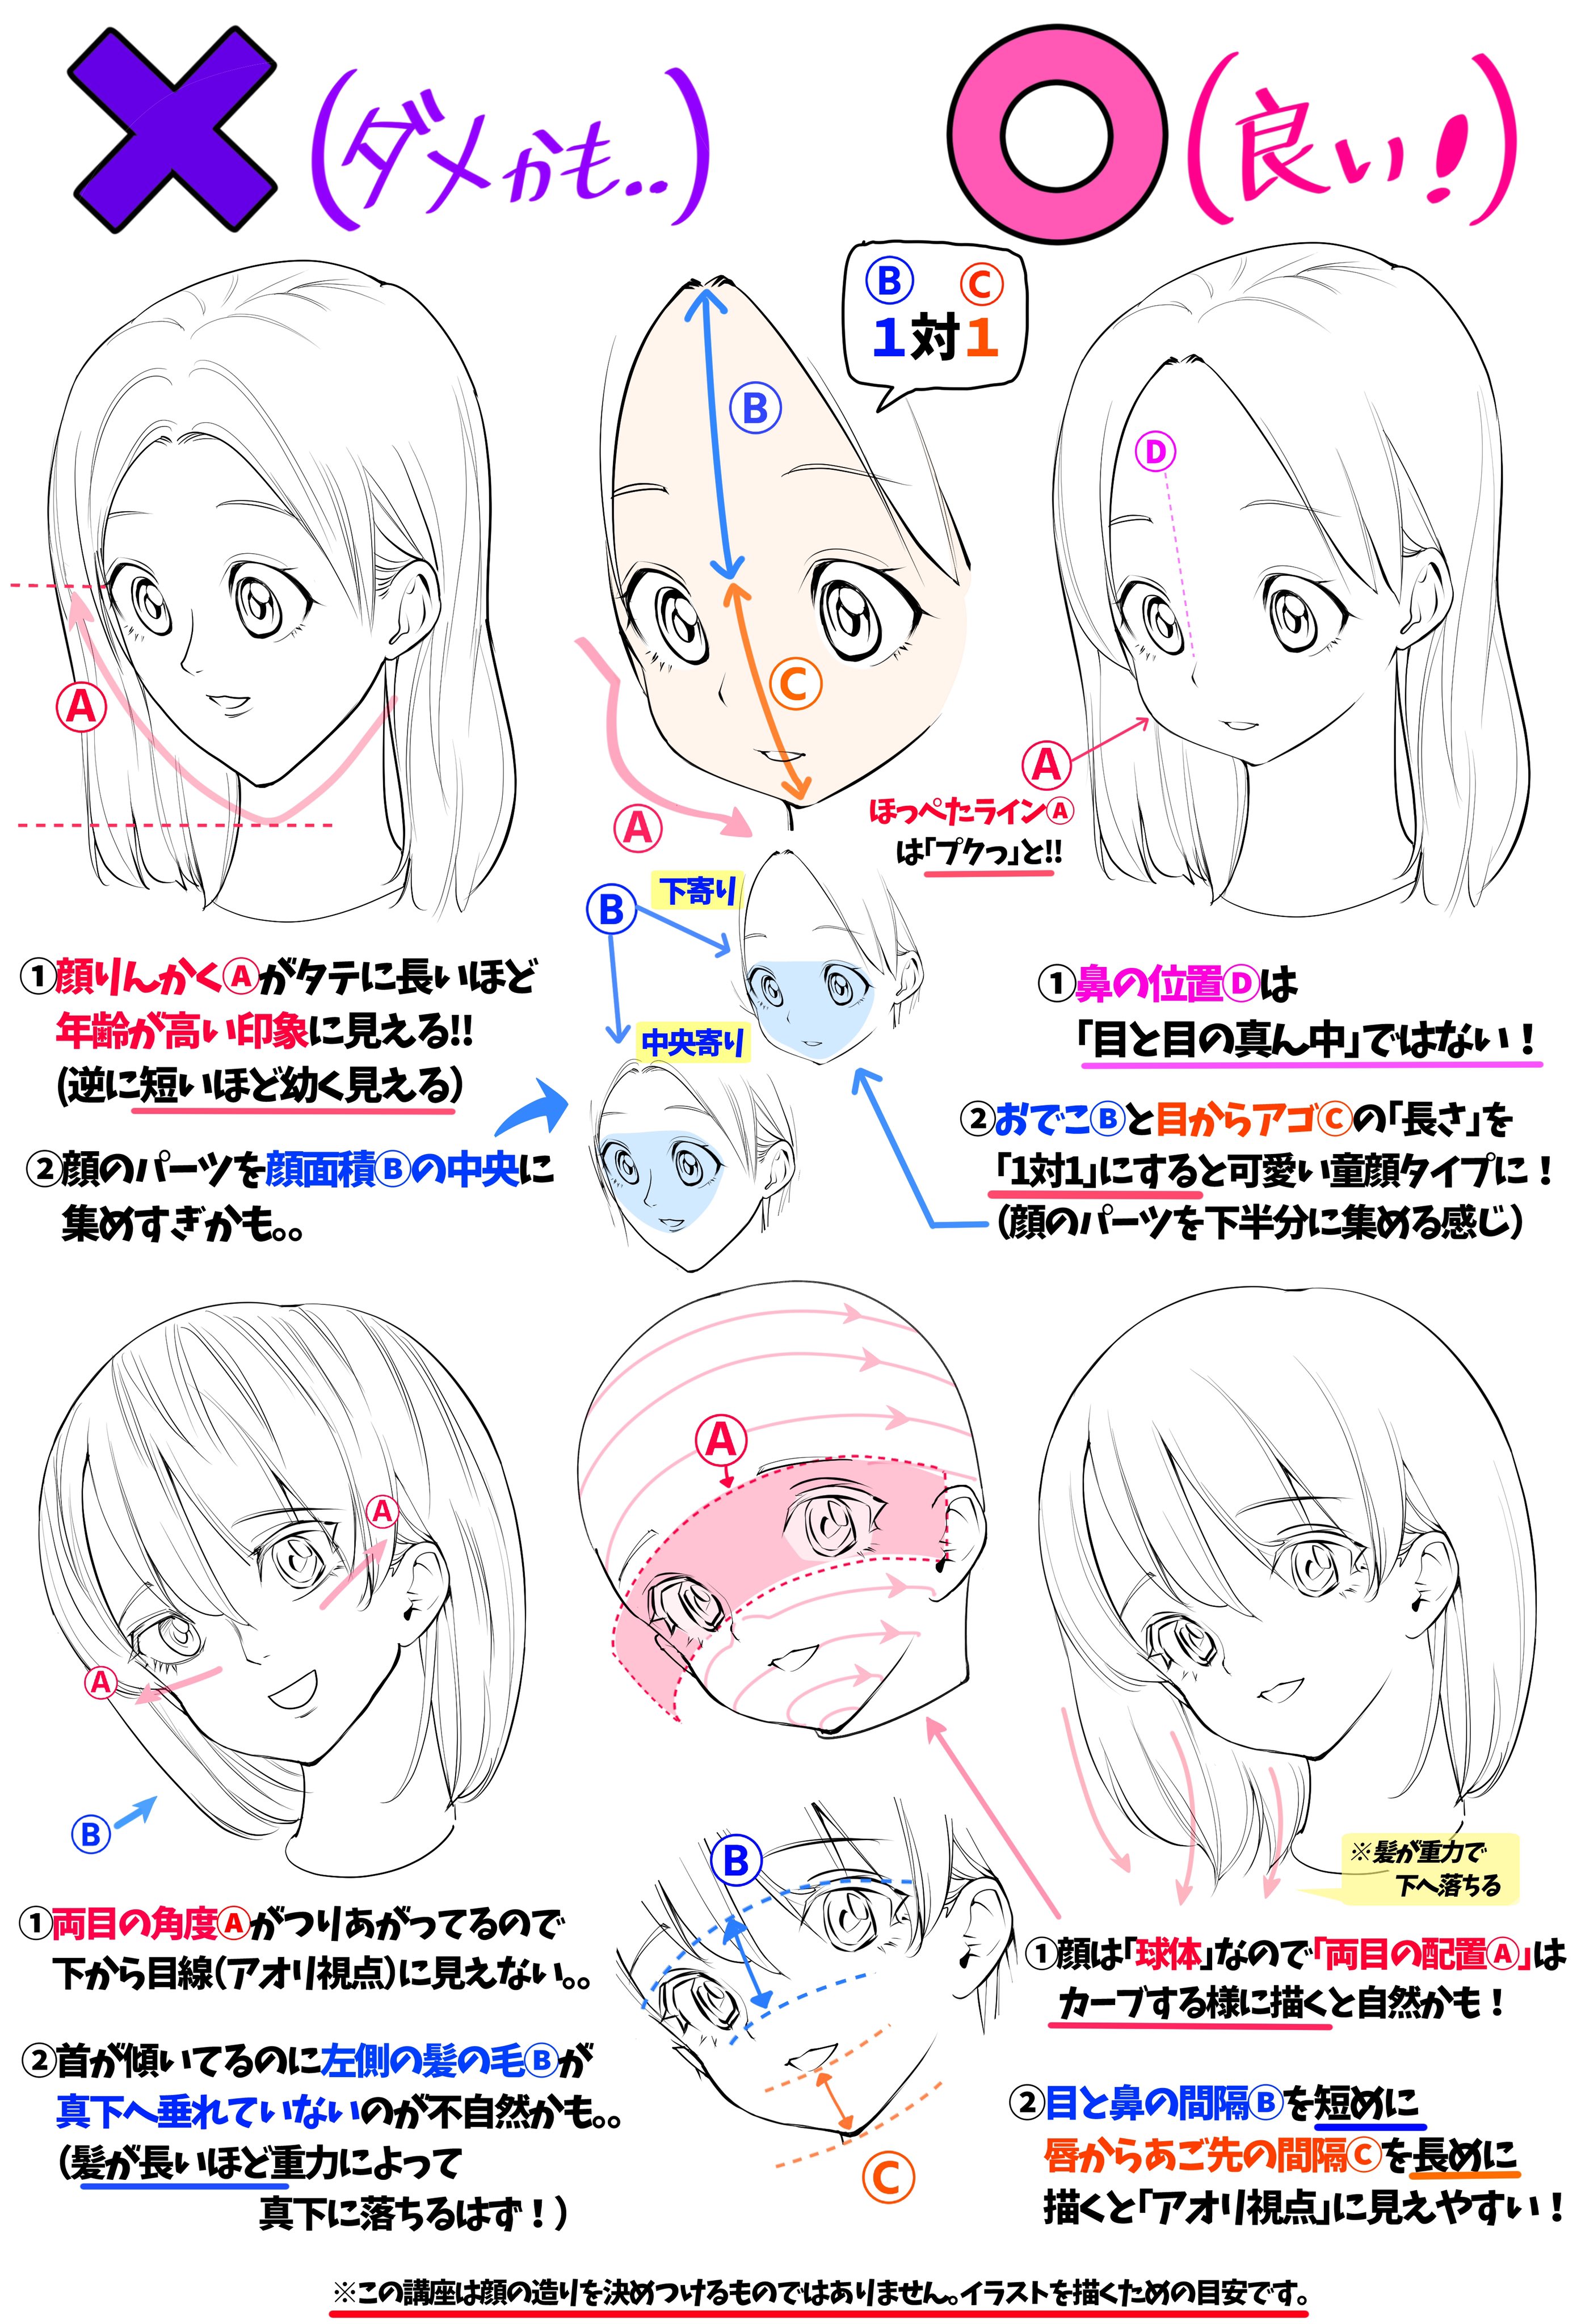 吉村拓也 イラスト講座 女の子の顔の比率とデッサン技法 ダメかも と 良いかも T Co Rxpem7sdig Twitter